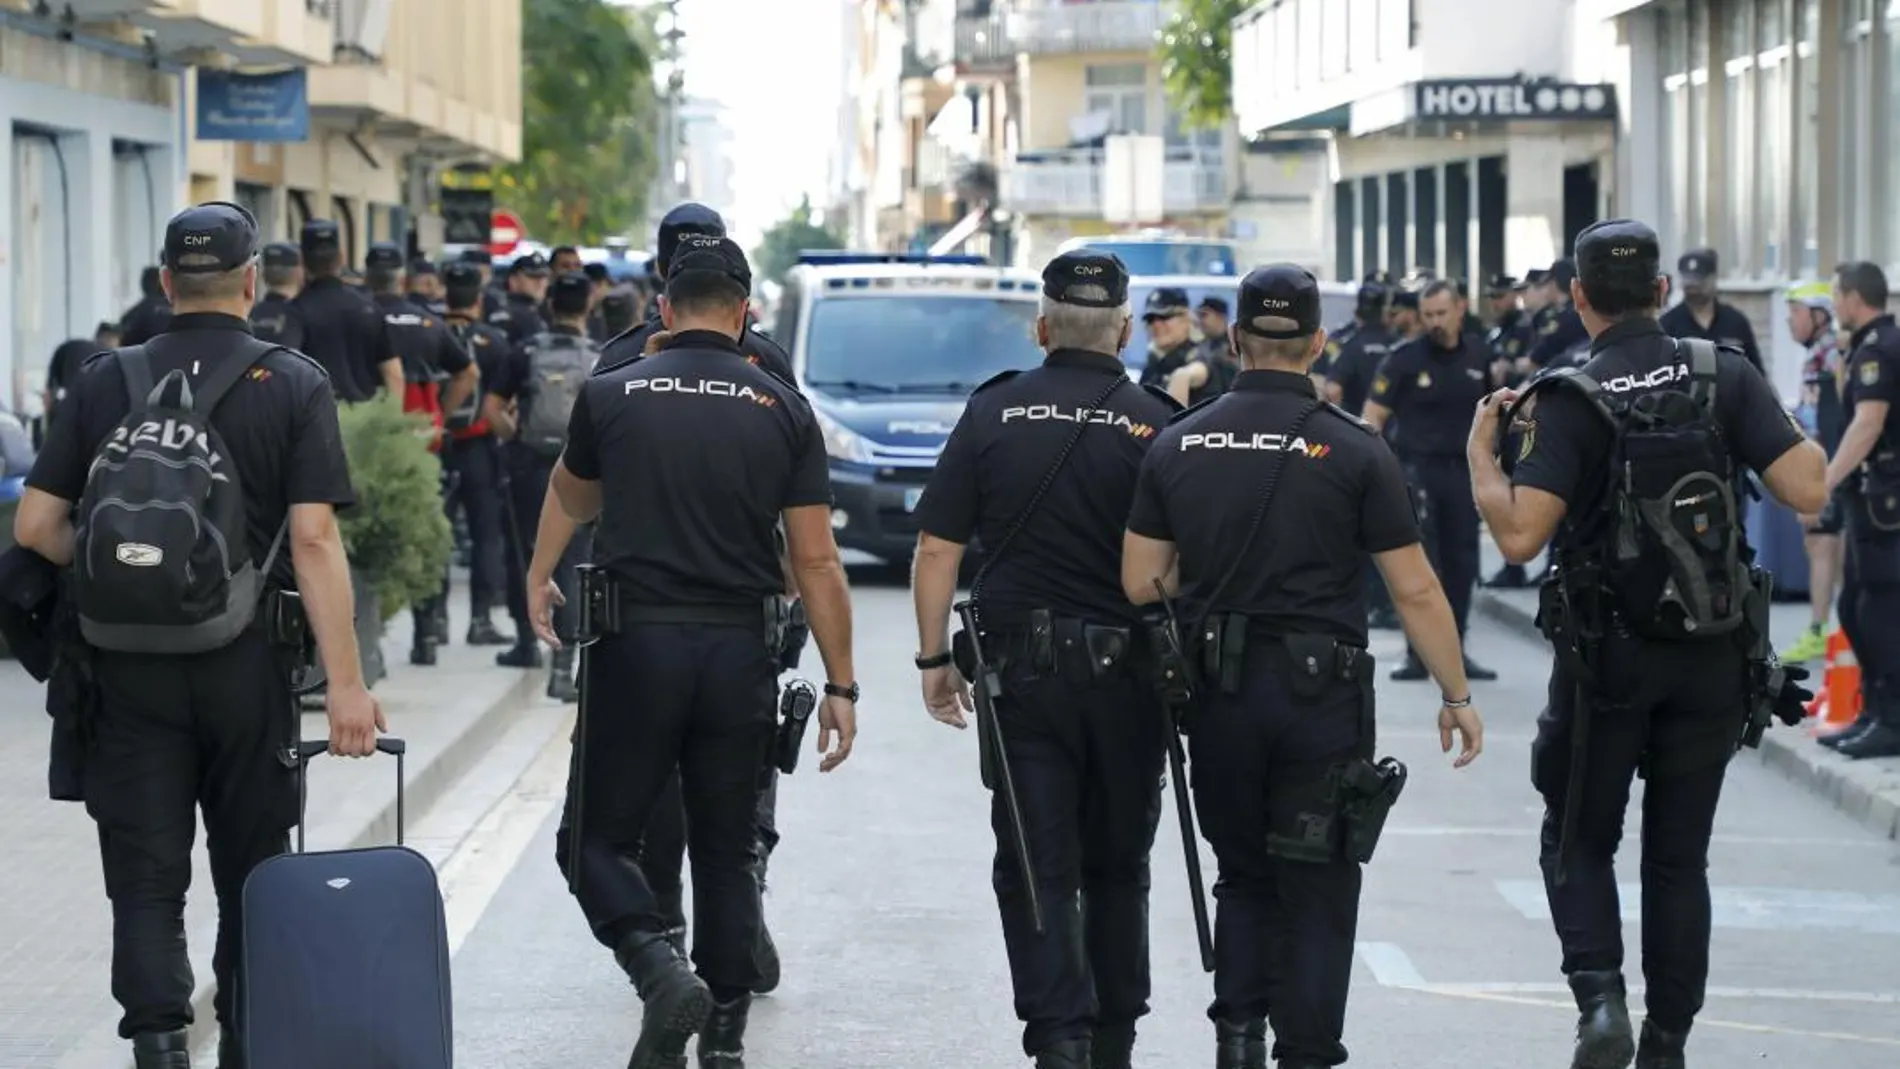 Alrededor de 400 policías nacionales alojados en dos hoteles de Pineda de Mar (Barcelona) fueron objeto de escraches / Archivo